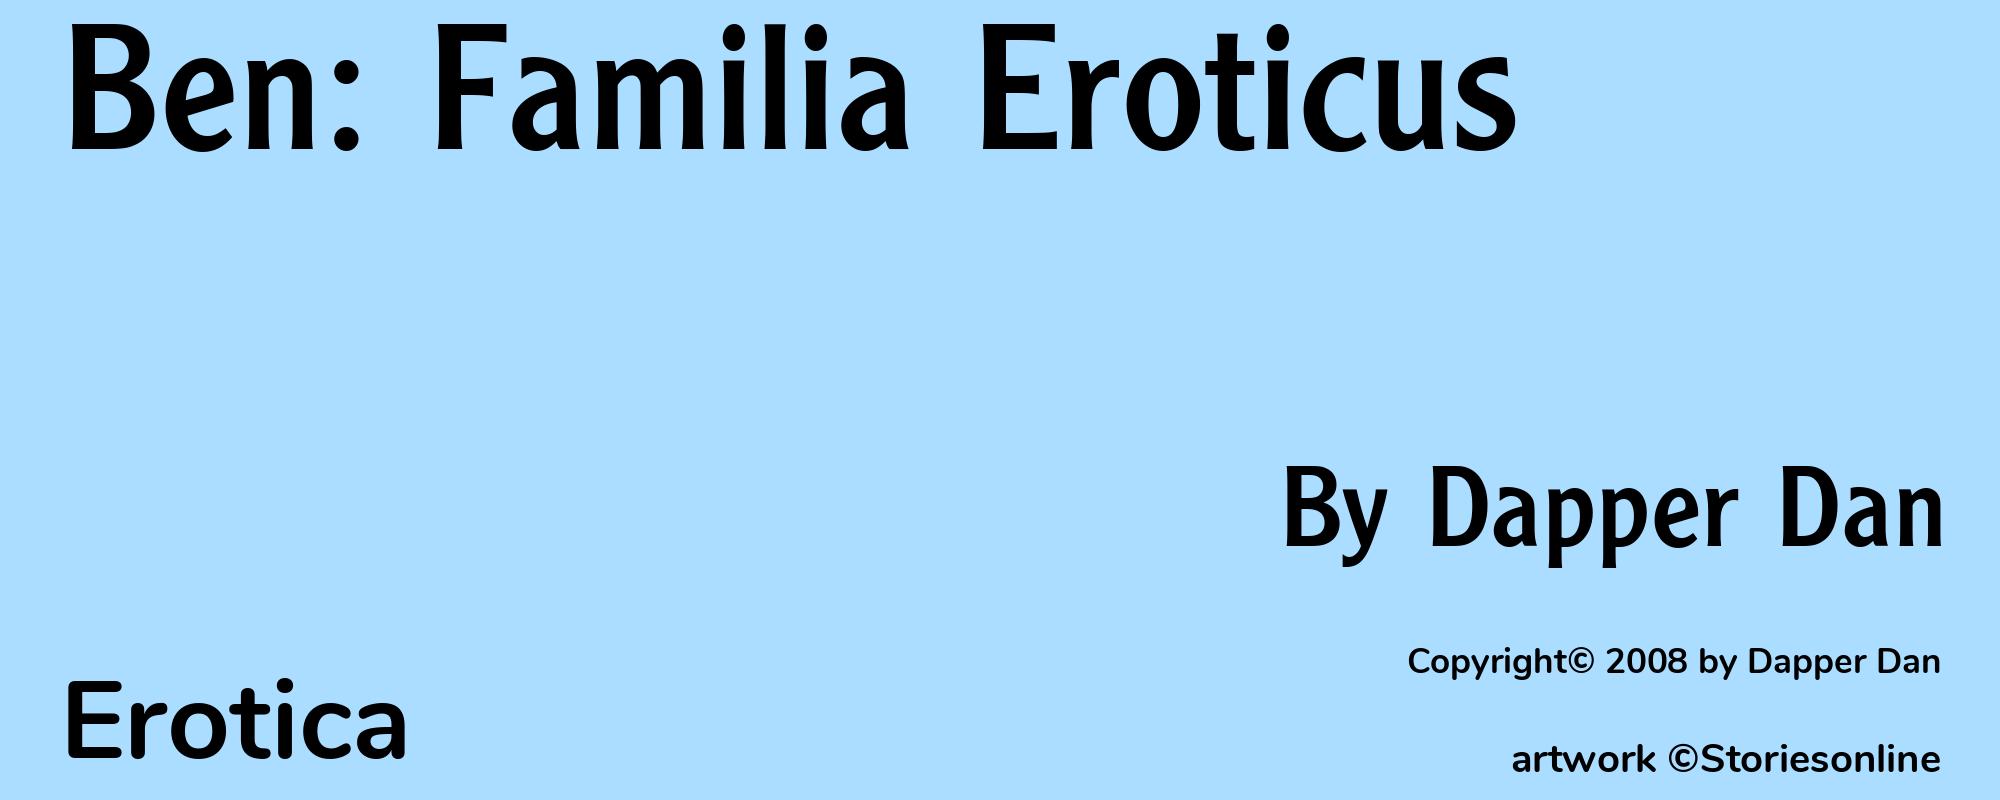 Ben: Familia Eroticus - Cover